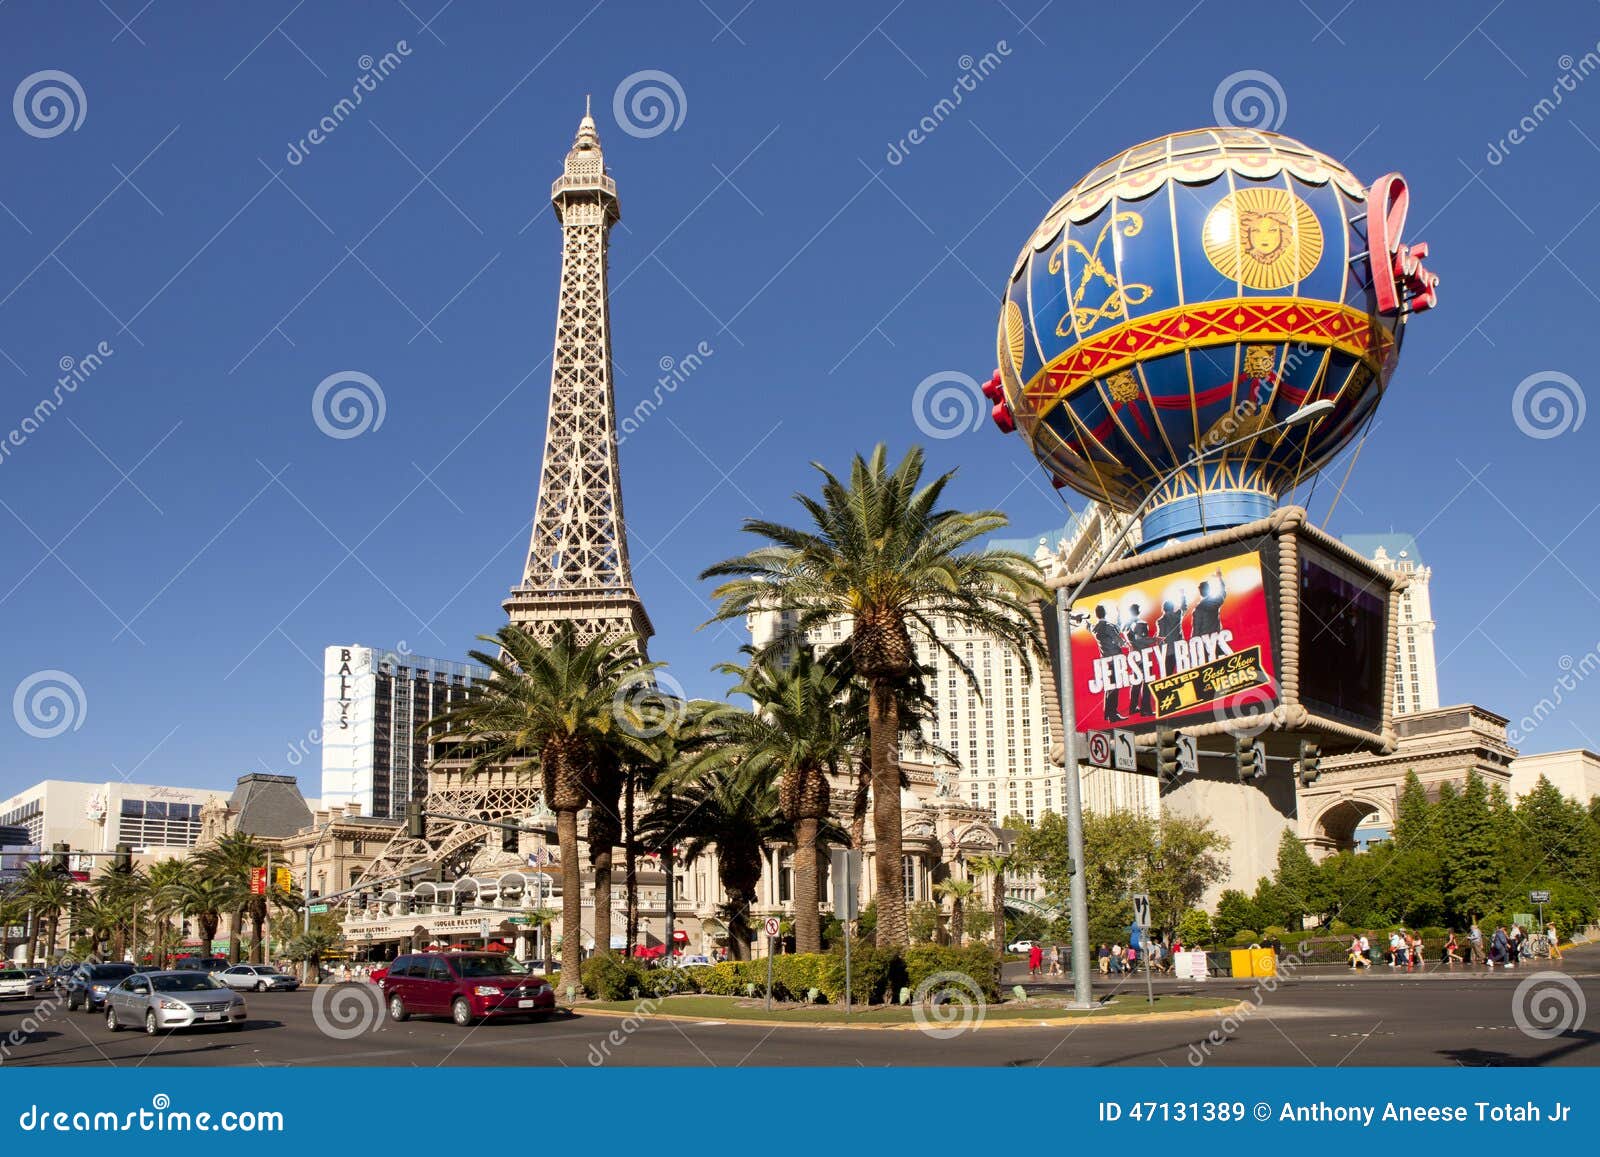 paris hotel and casino